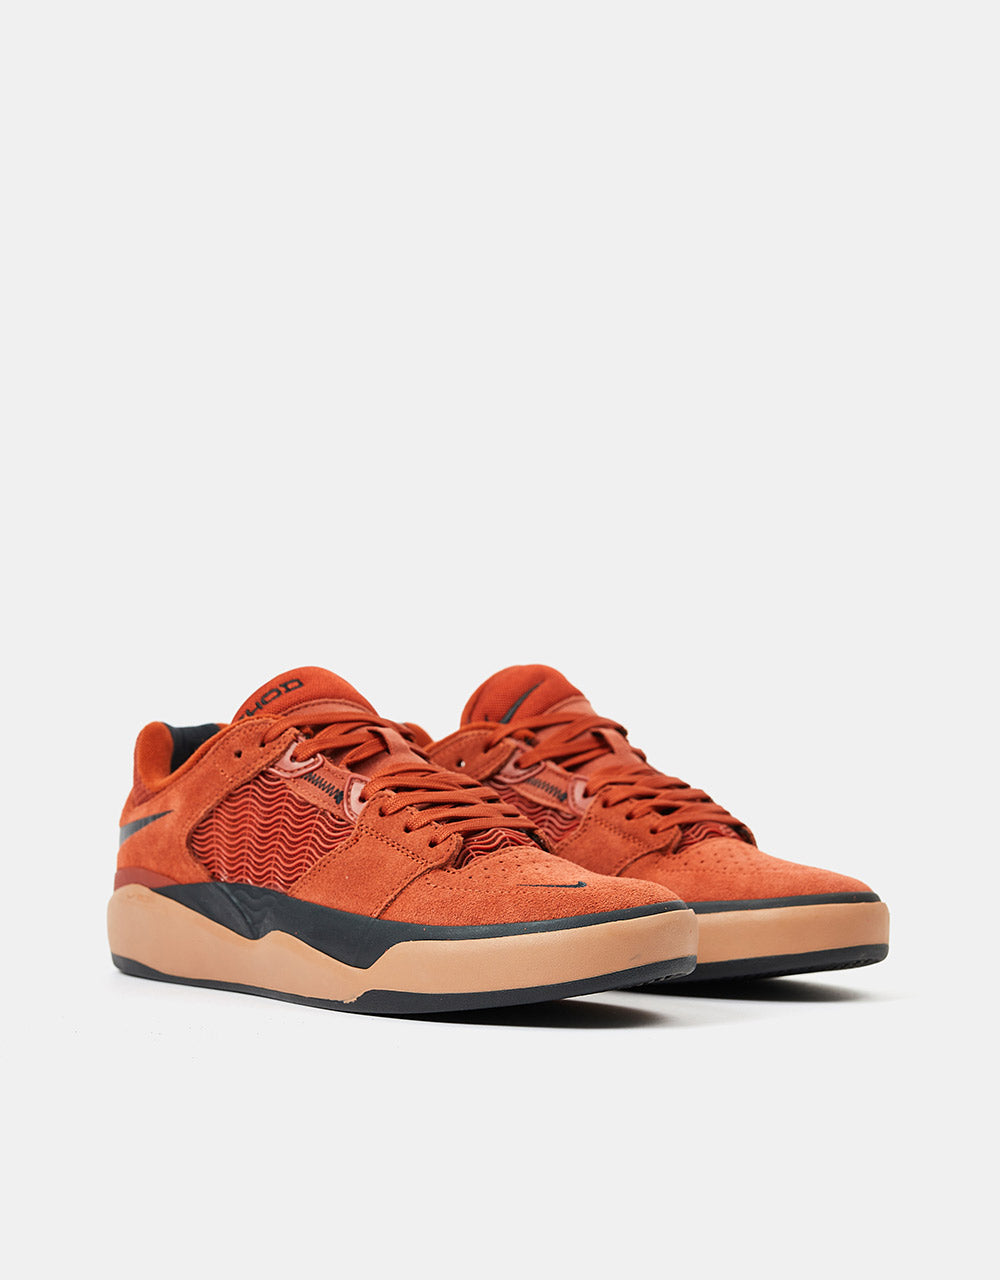 Nike SB Ishod - Rugged Orange Gum